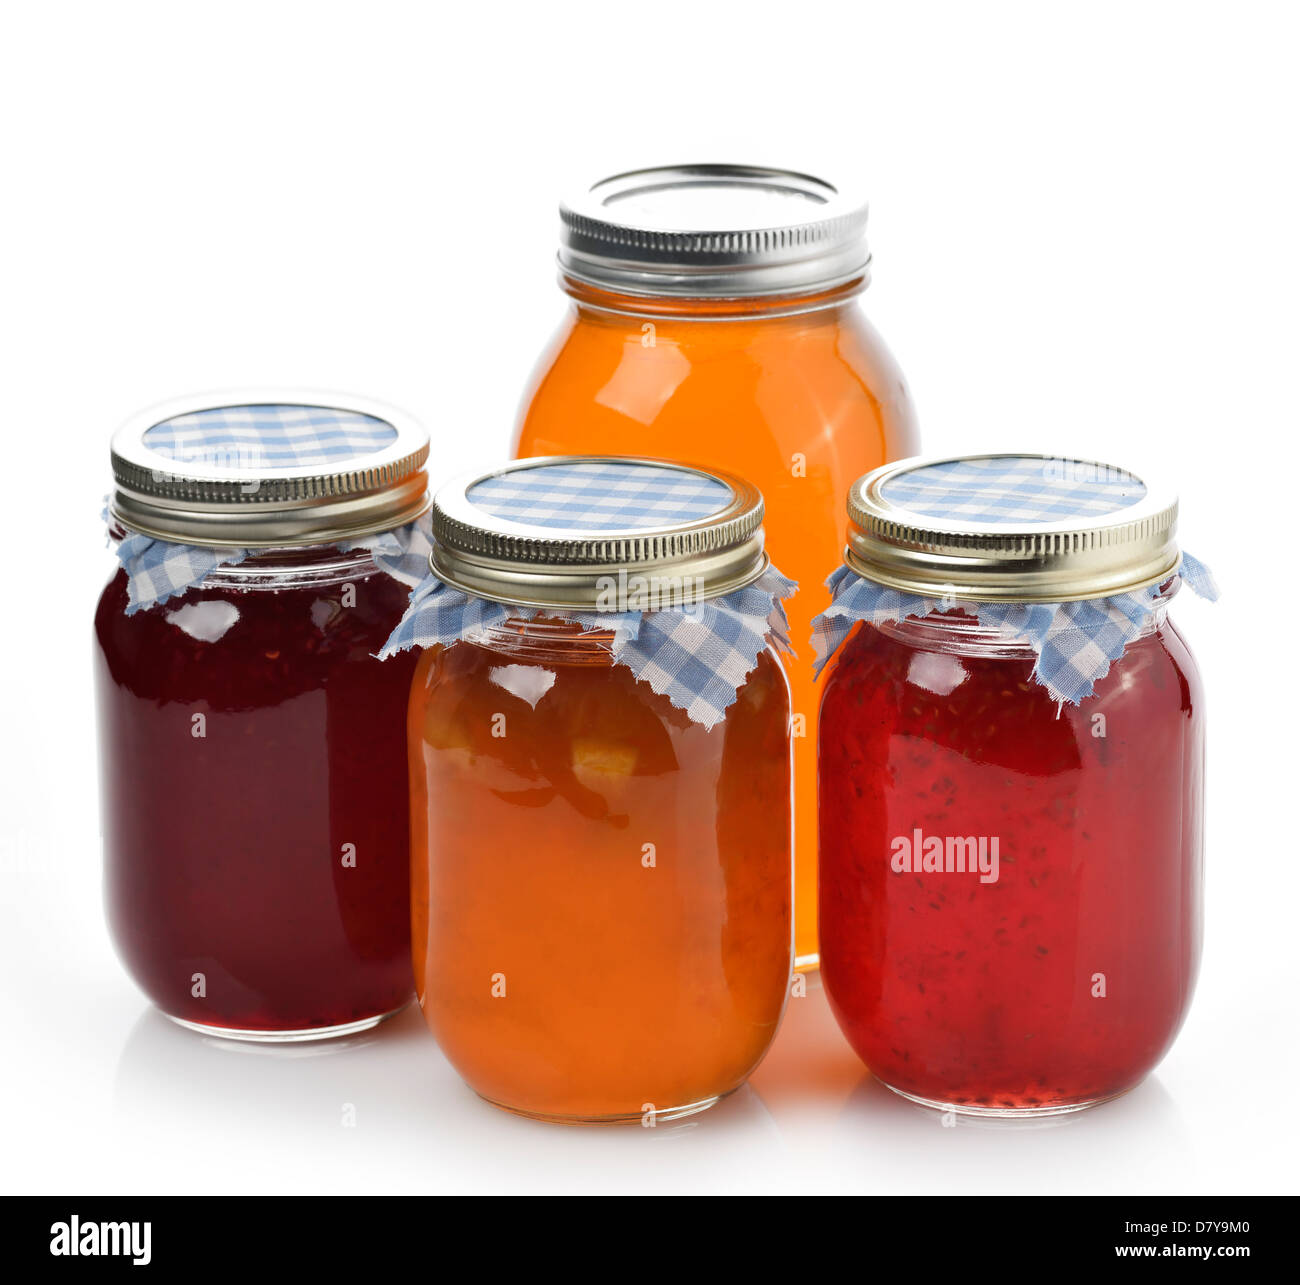 Marmellate fatte in casa,marmellata e miele in vasetti di vetro Foto Stock